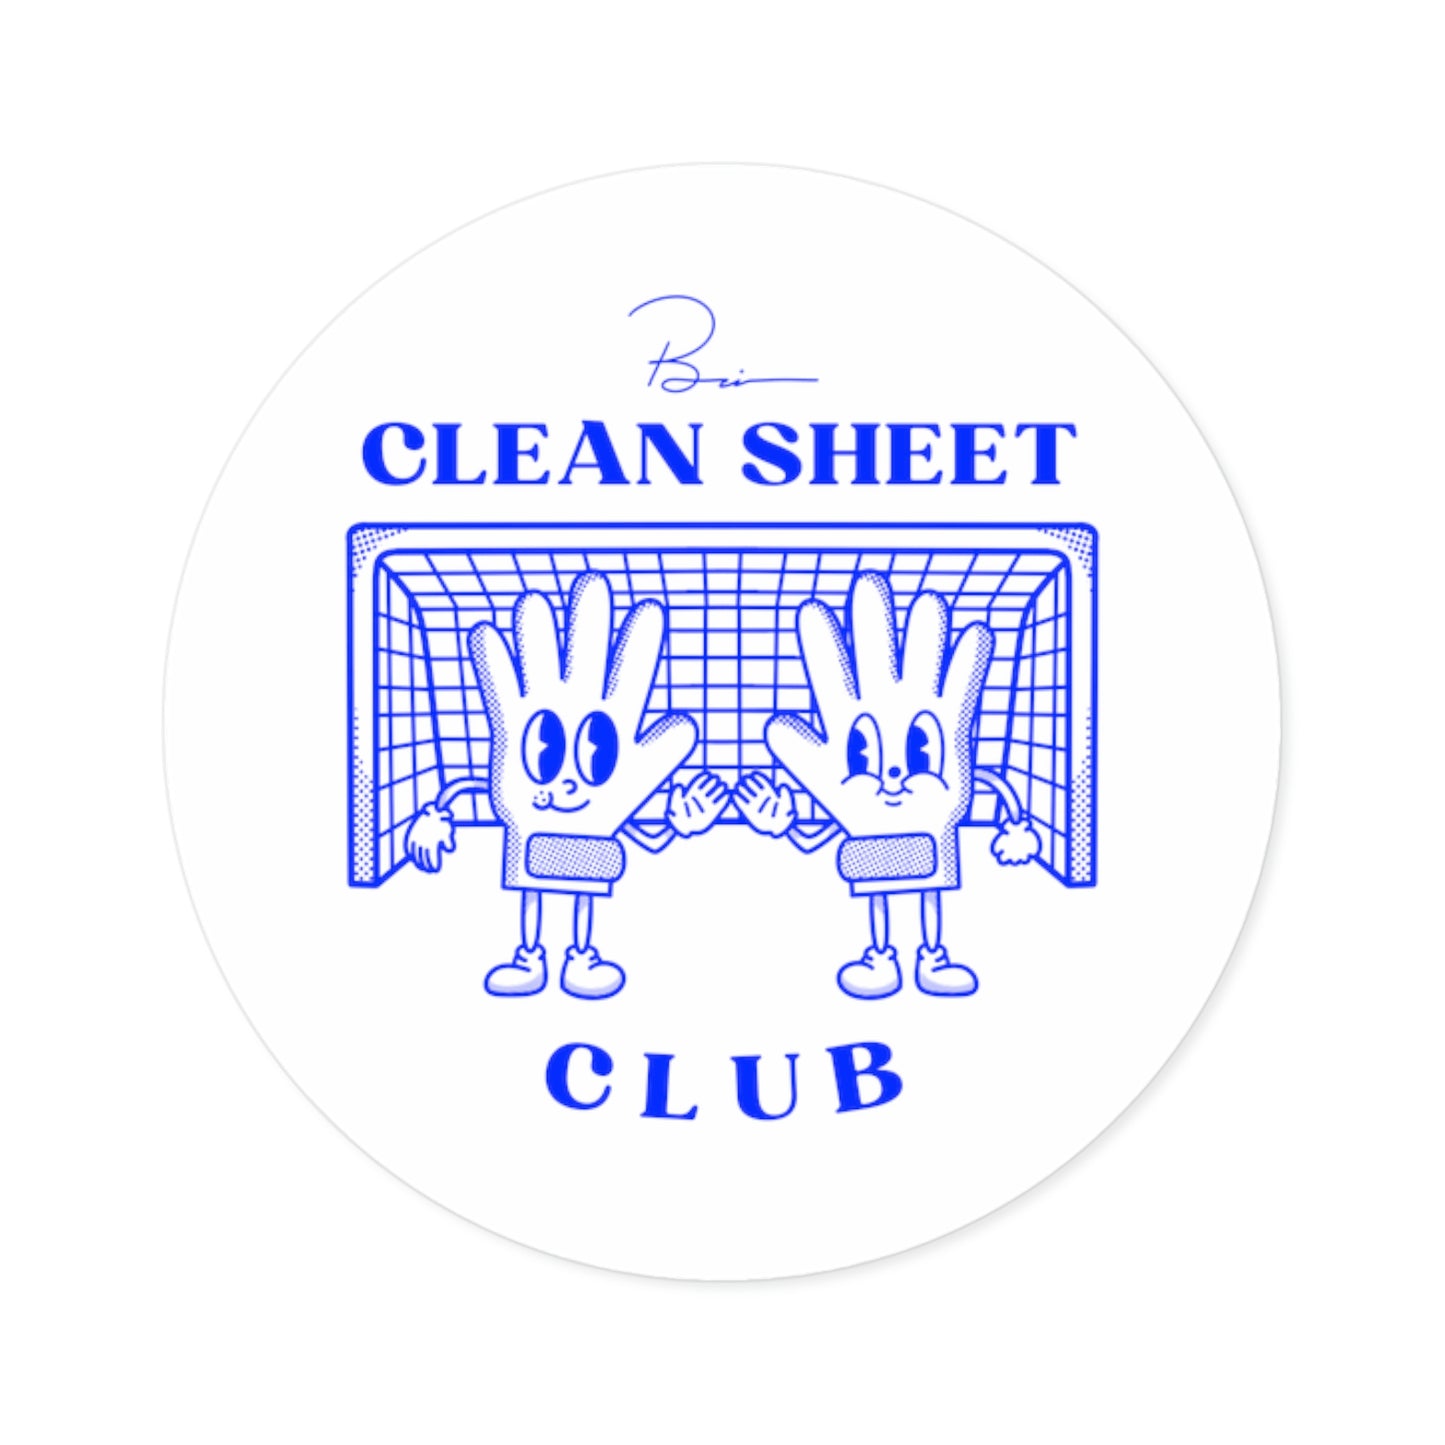 Clean Sheet Club Sticker, Blue